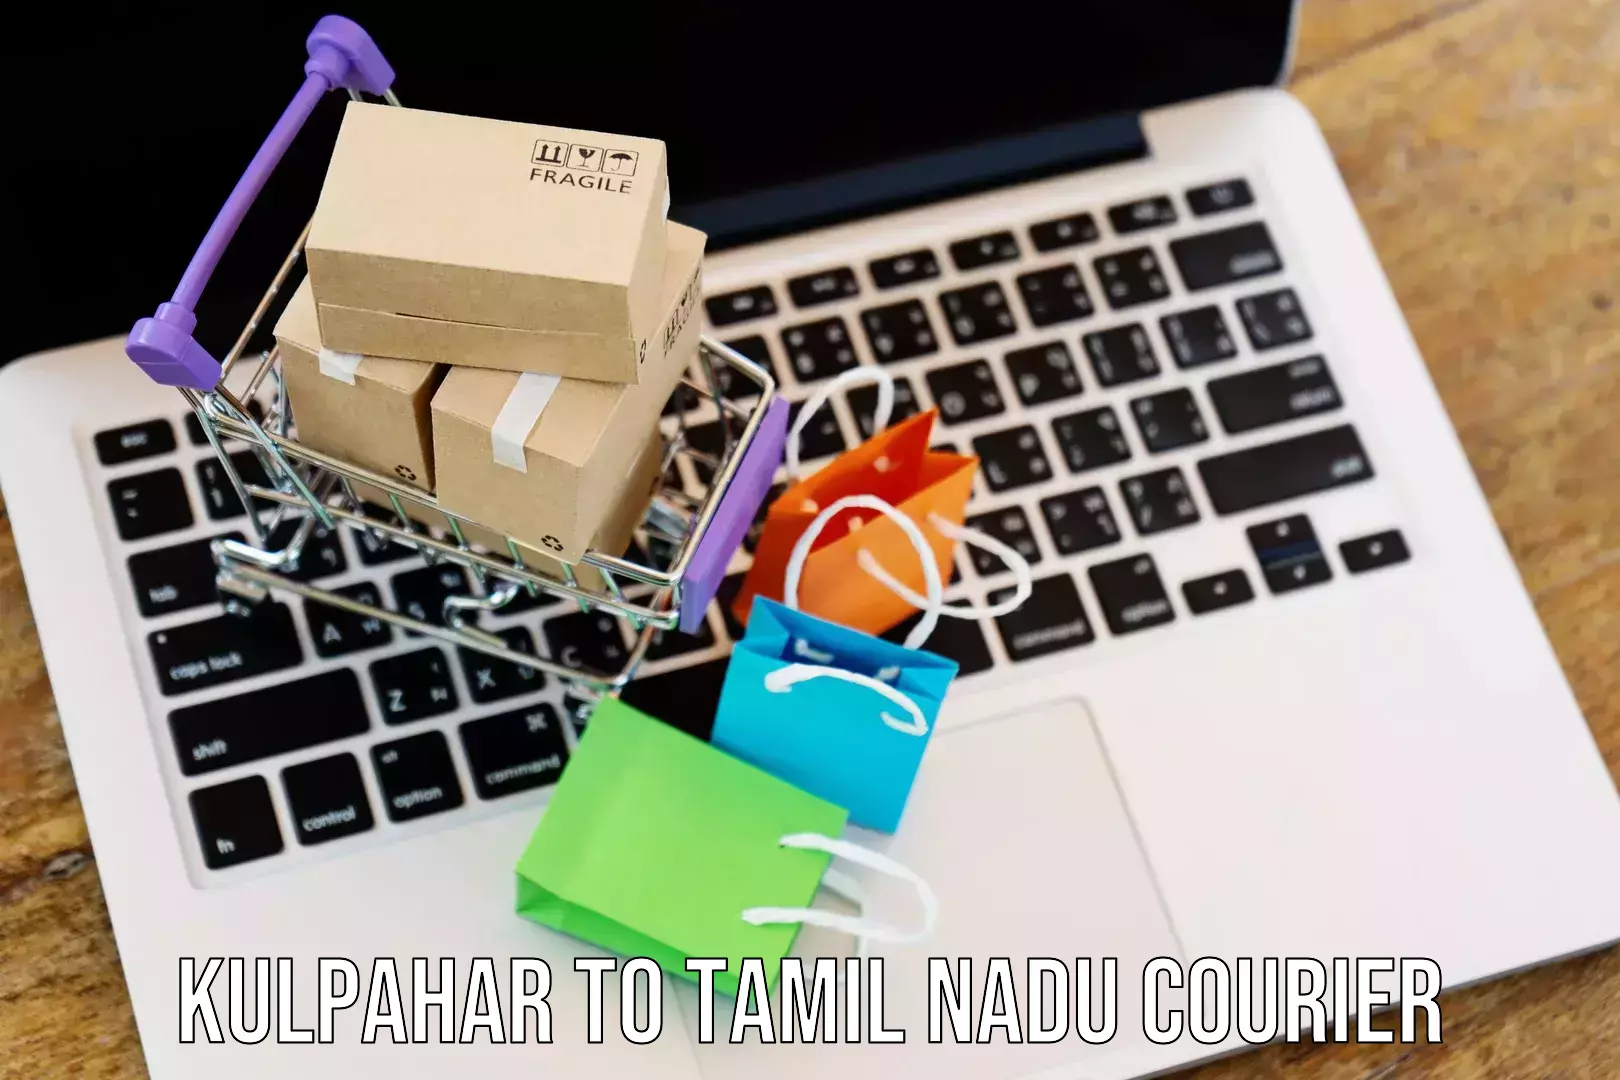 Efficient parcel service Kulpahar to Tamil Nadu